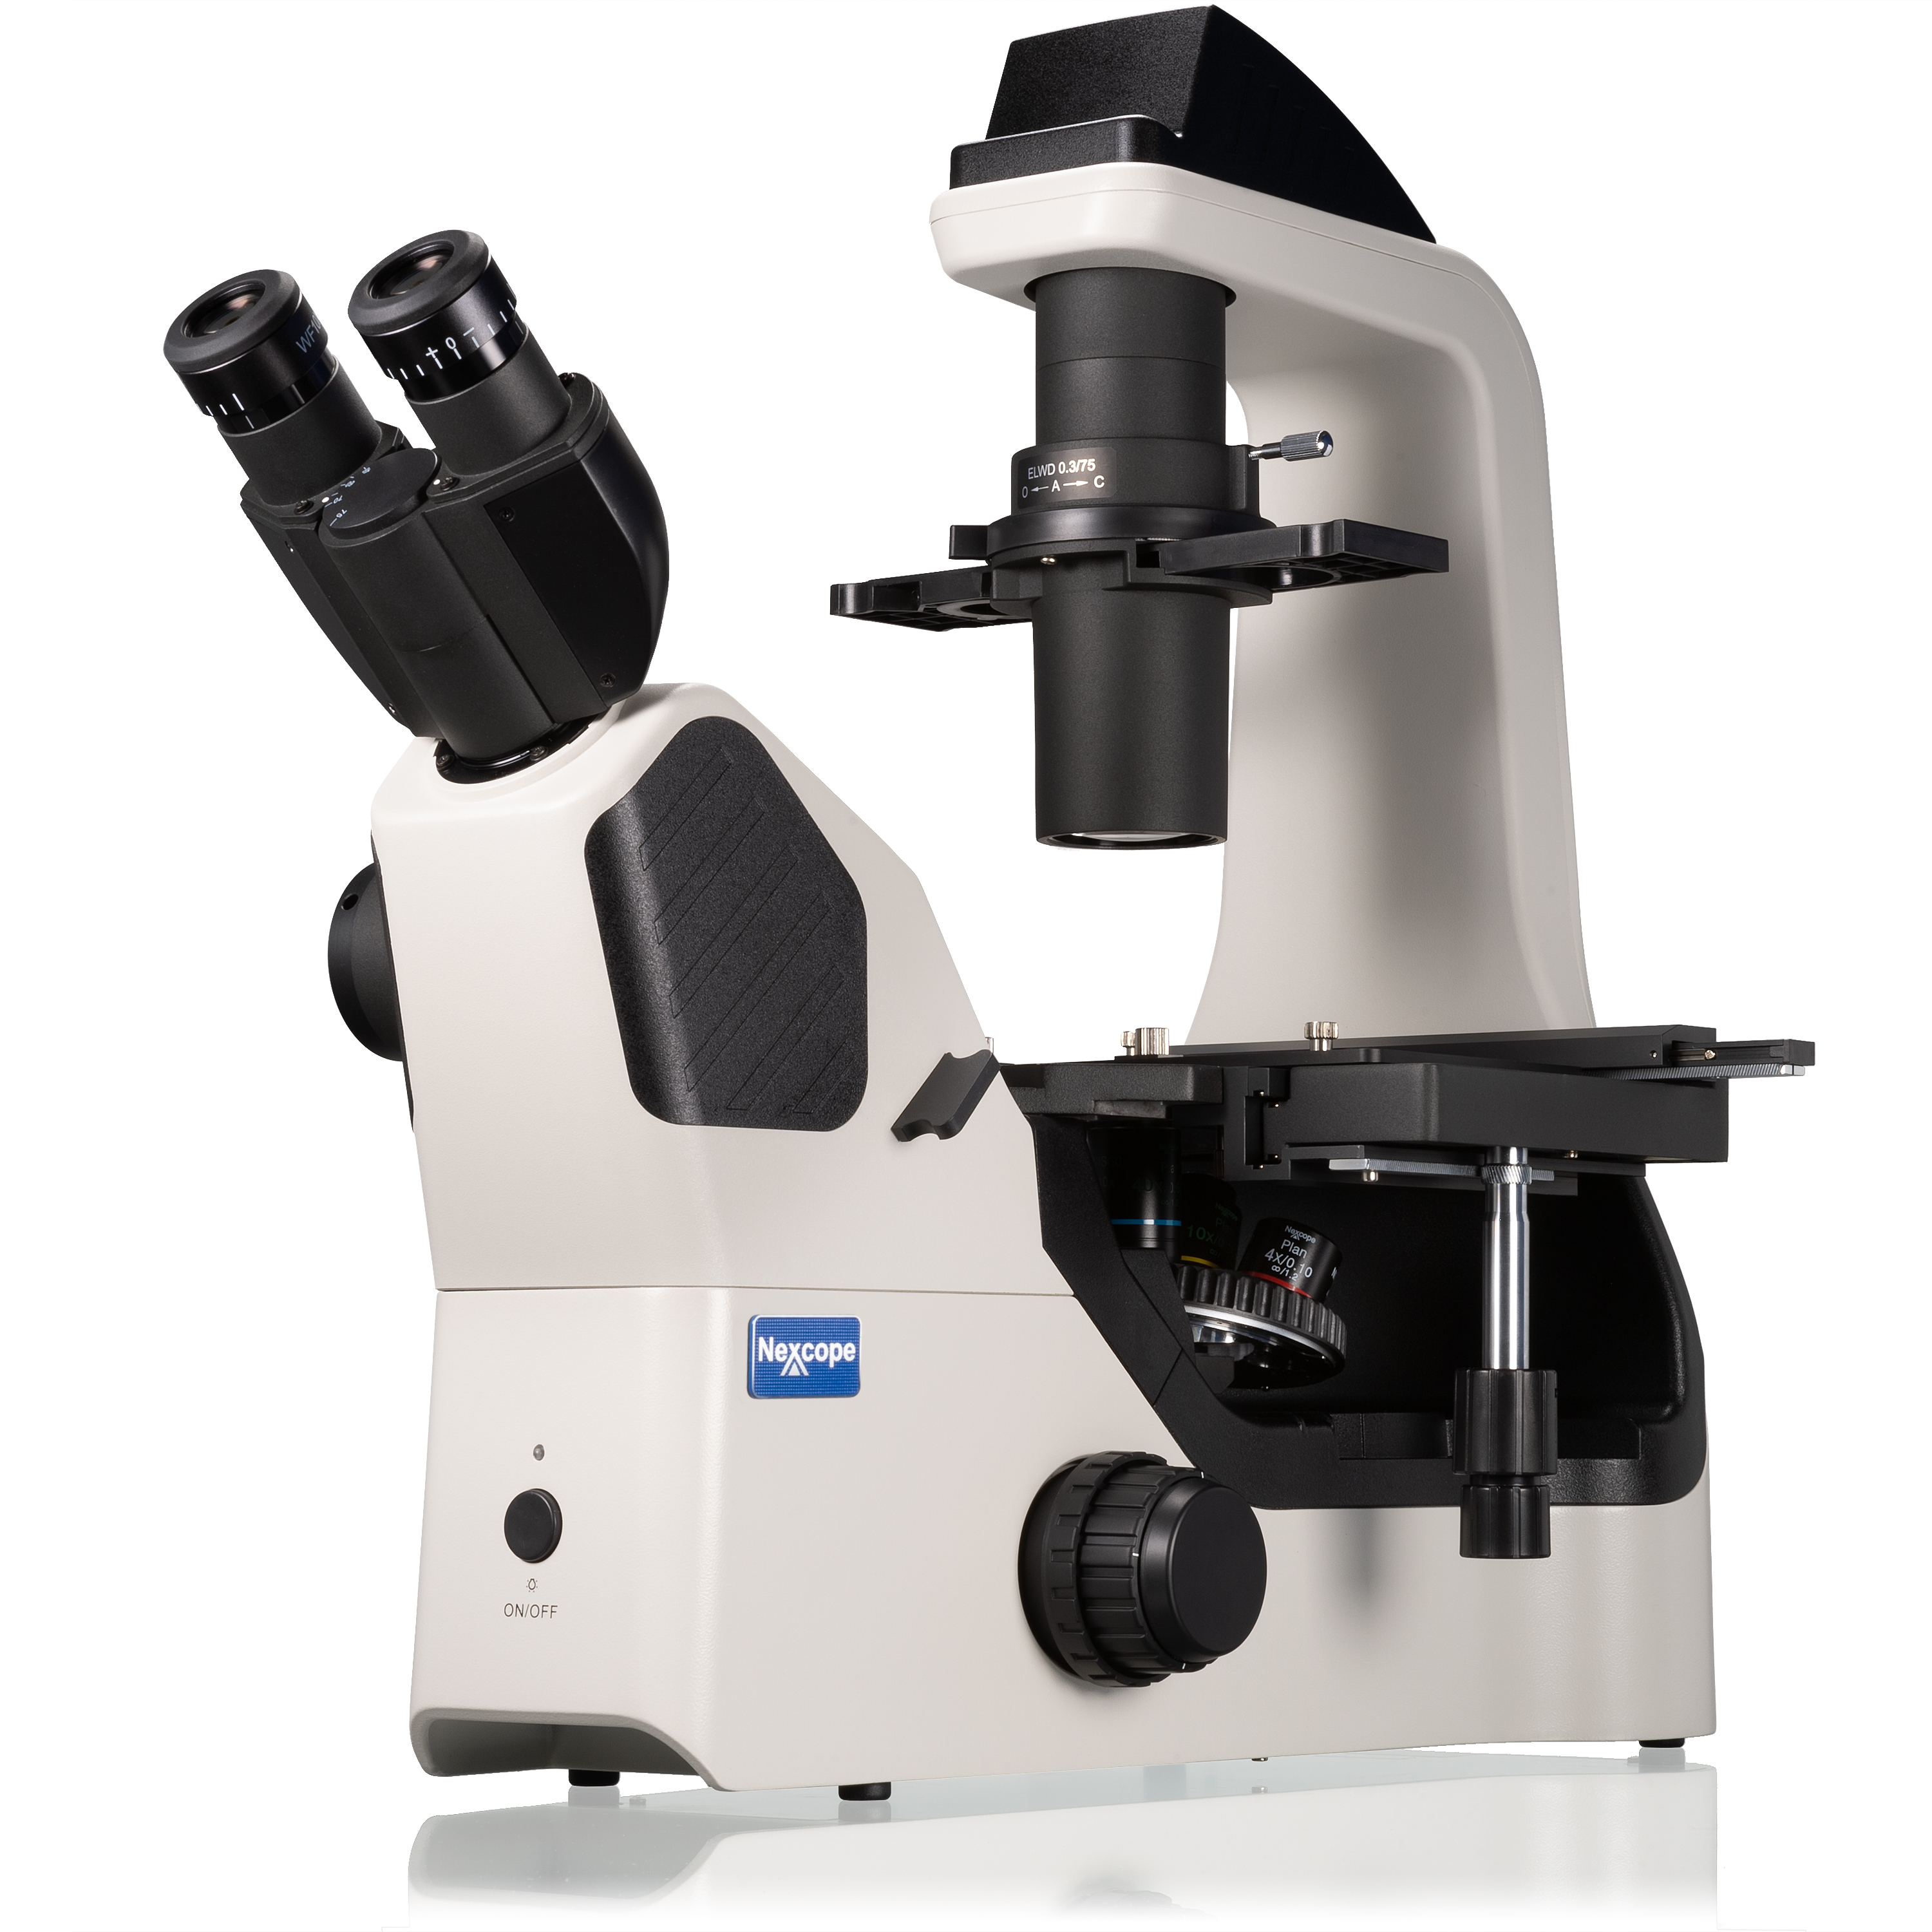 Nexcope NIB610 Microscopio da Laboratorio Invertito Professionale